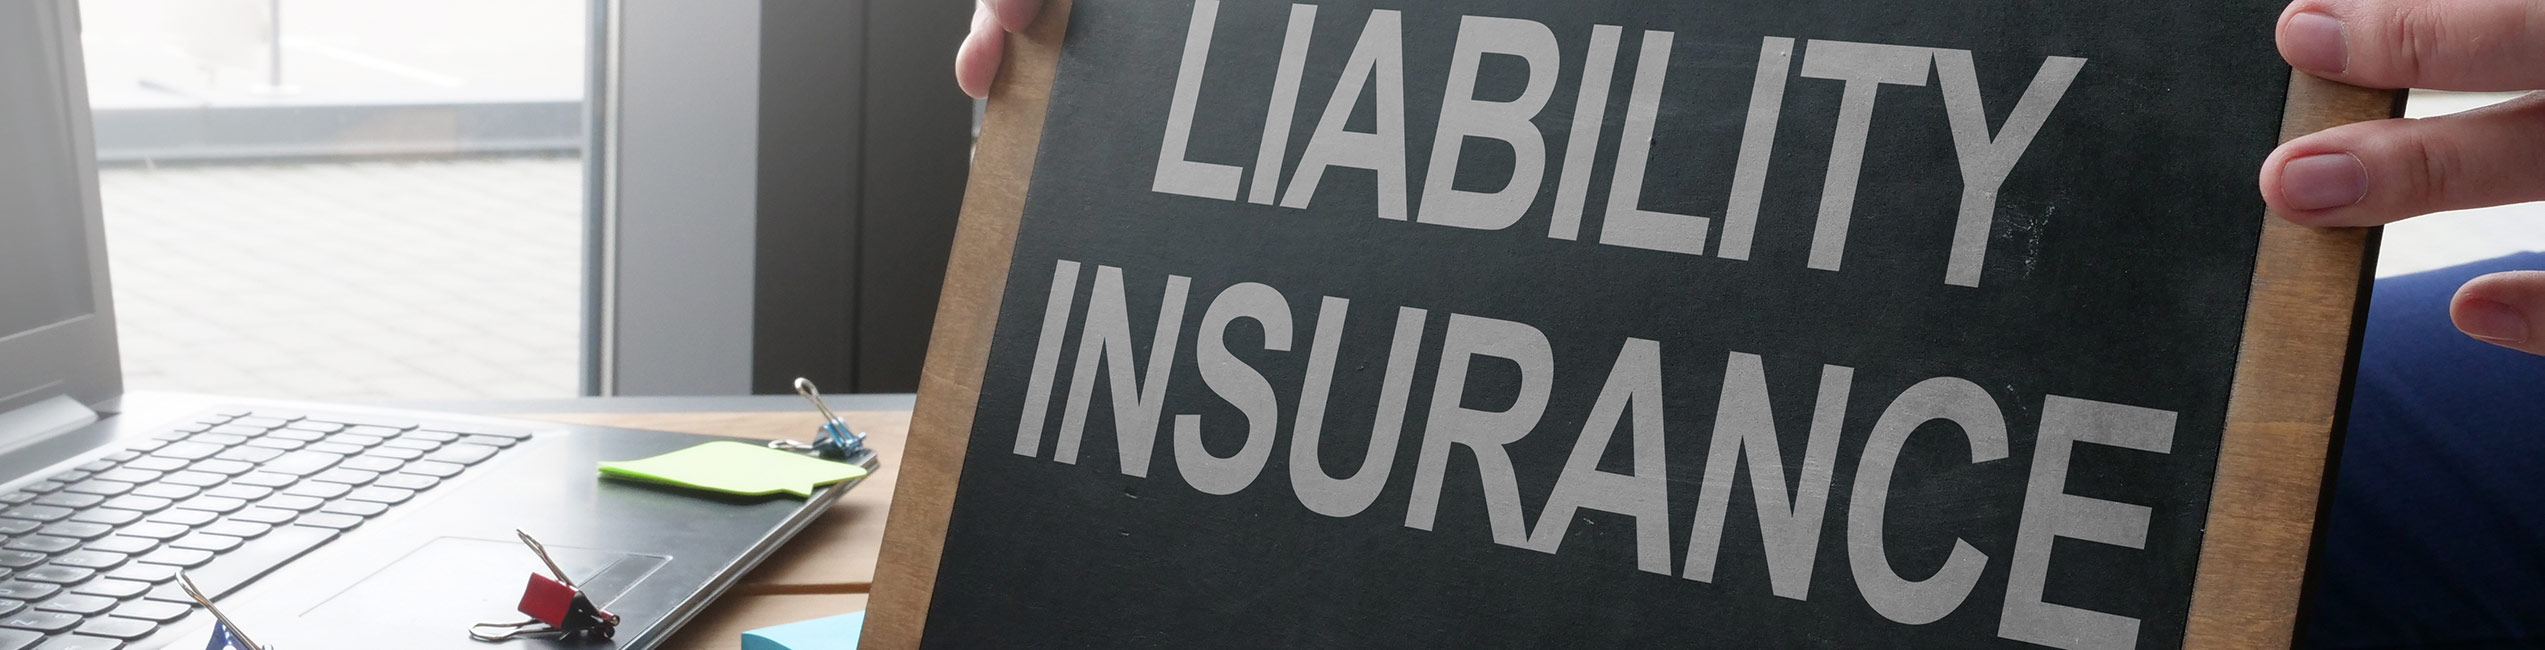 Liability Insurance Written on a board